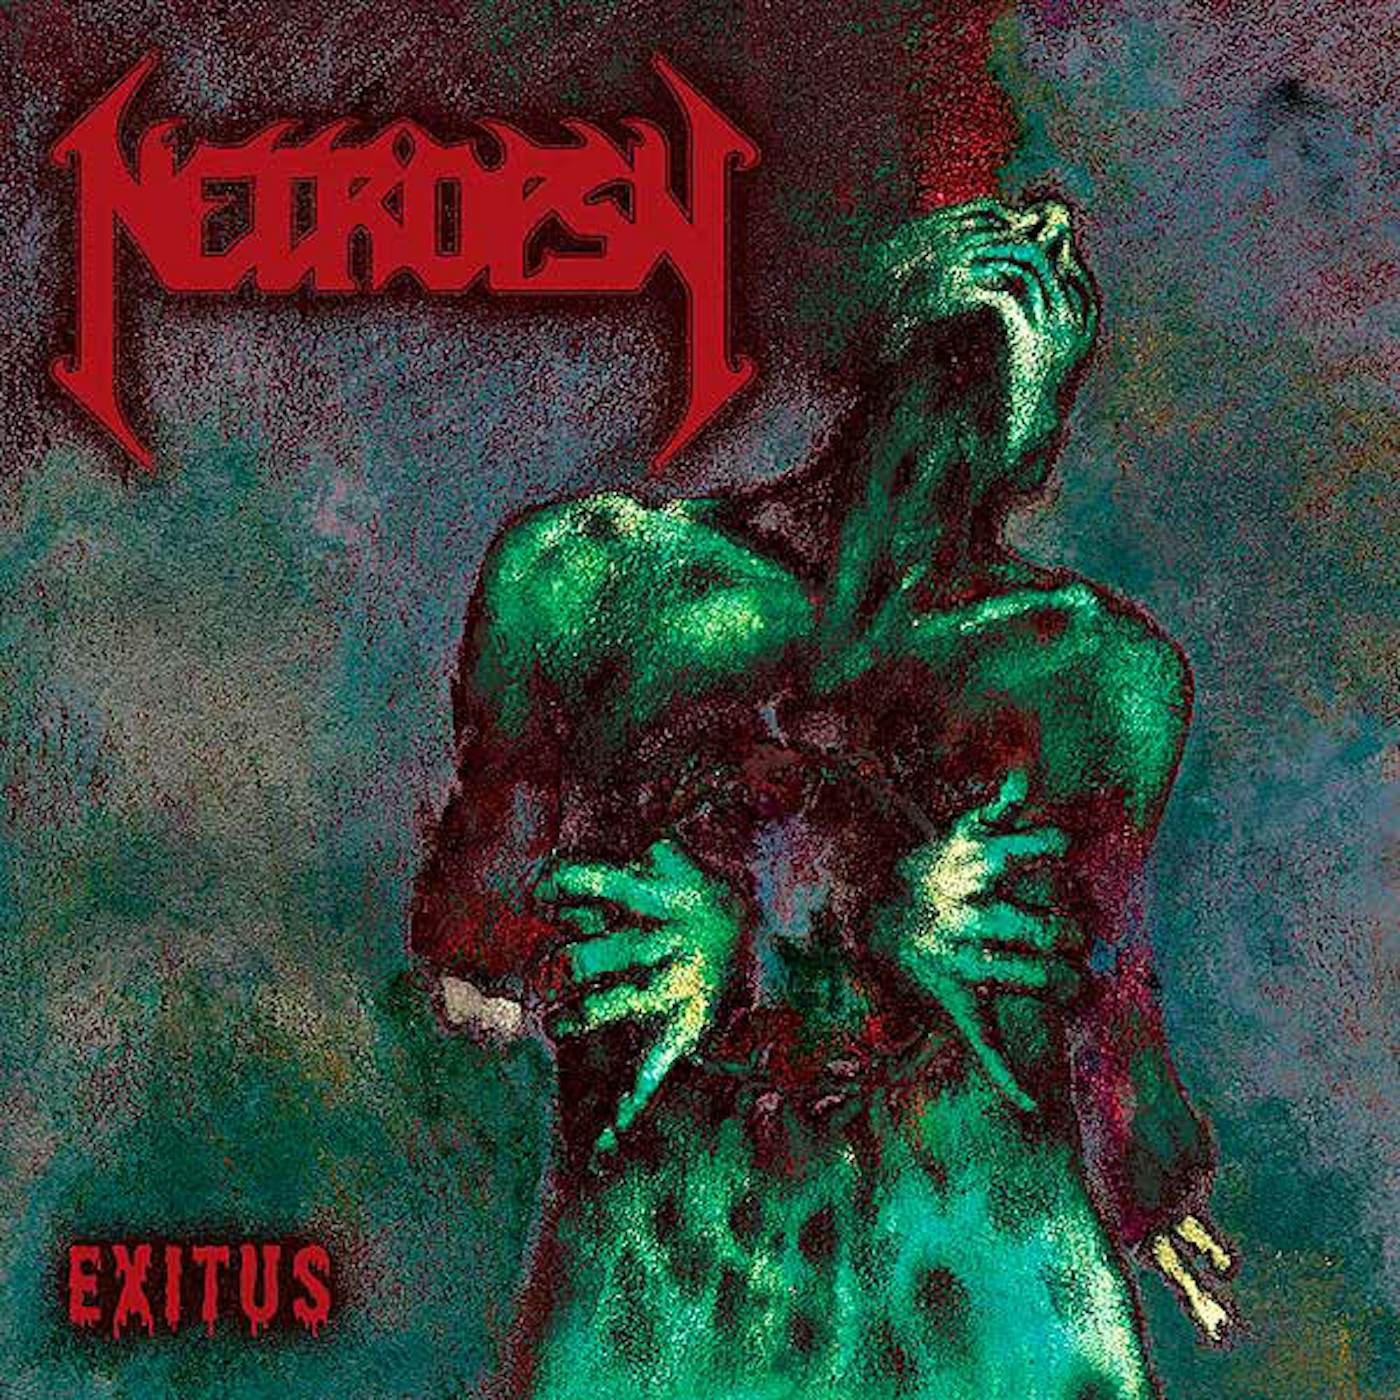 Necropsy EXITUS CD